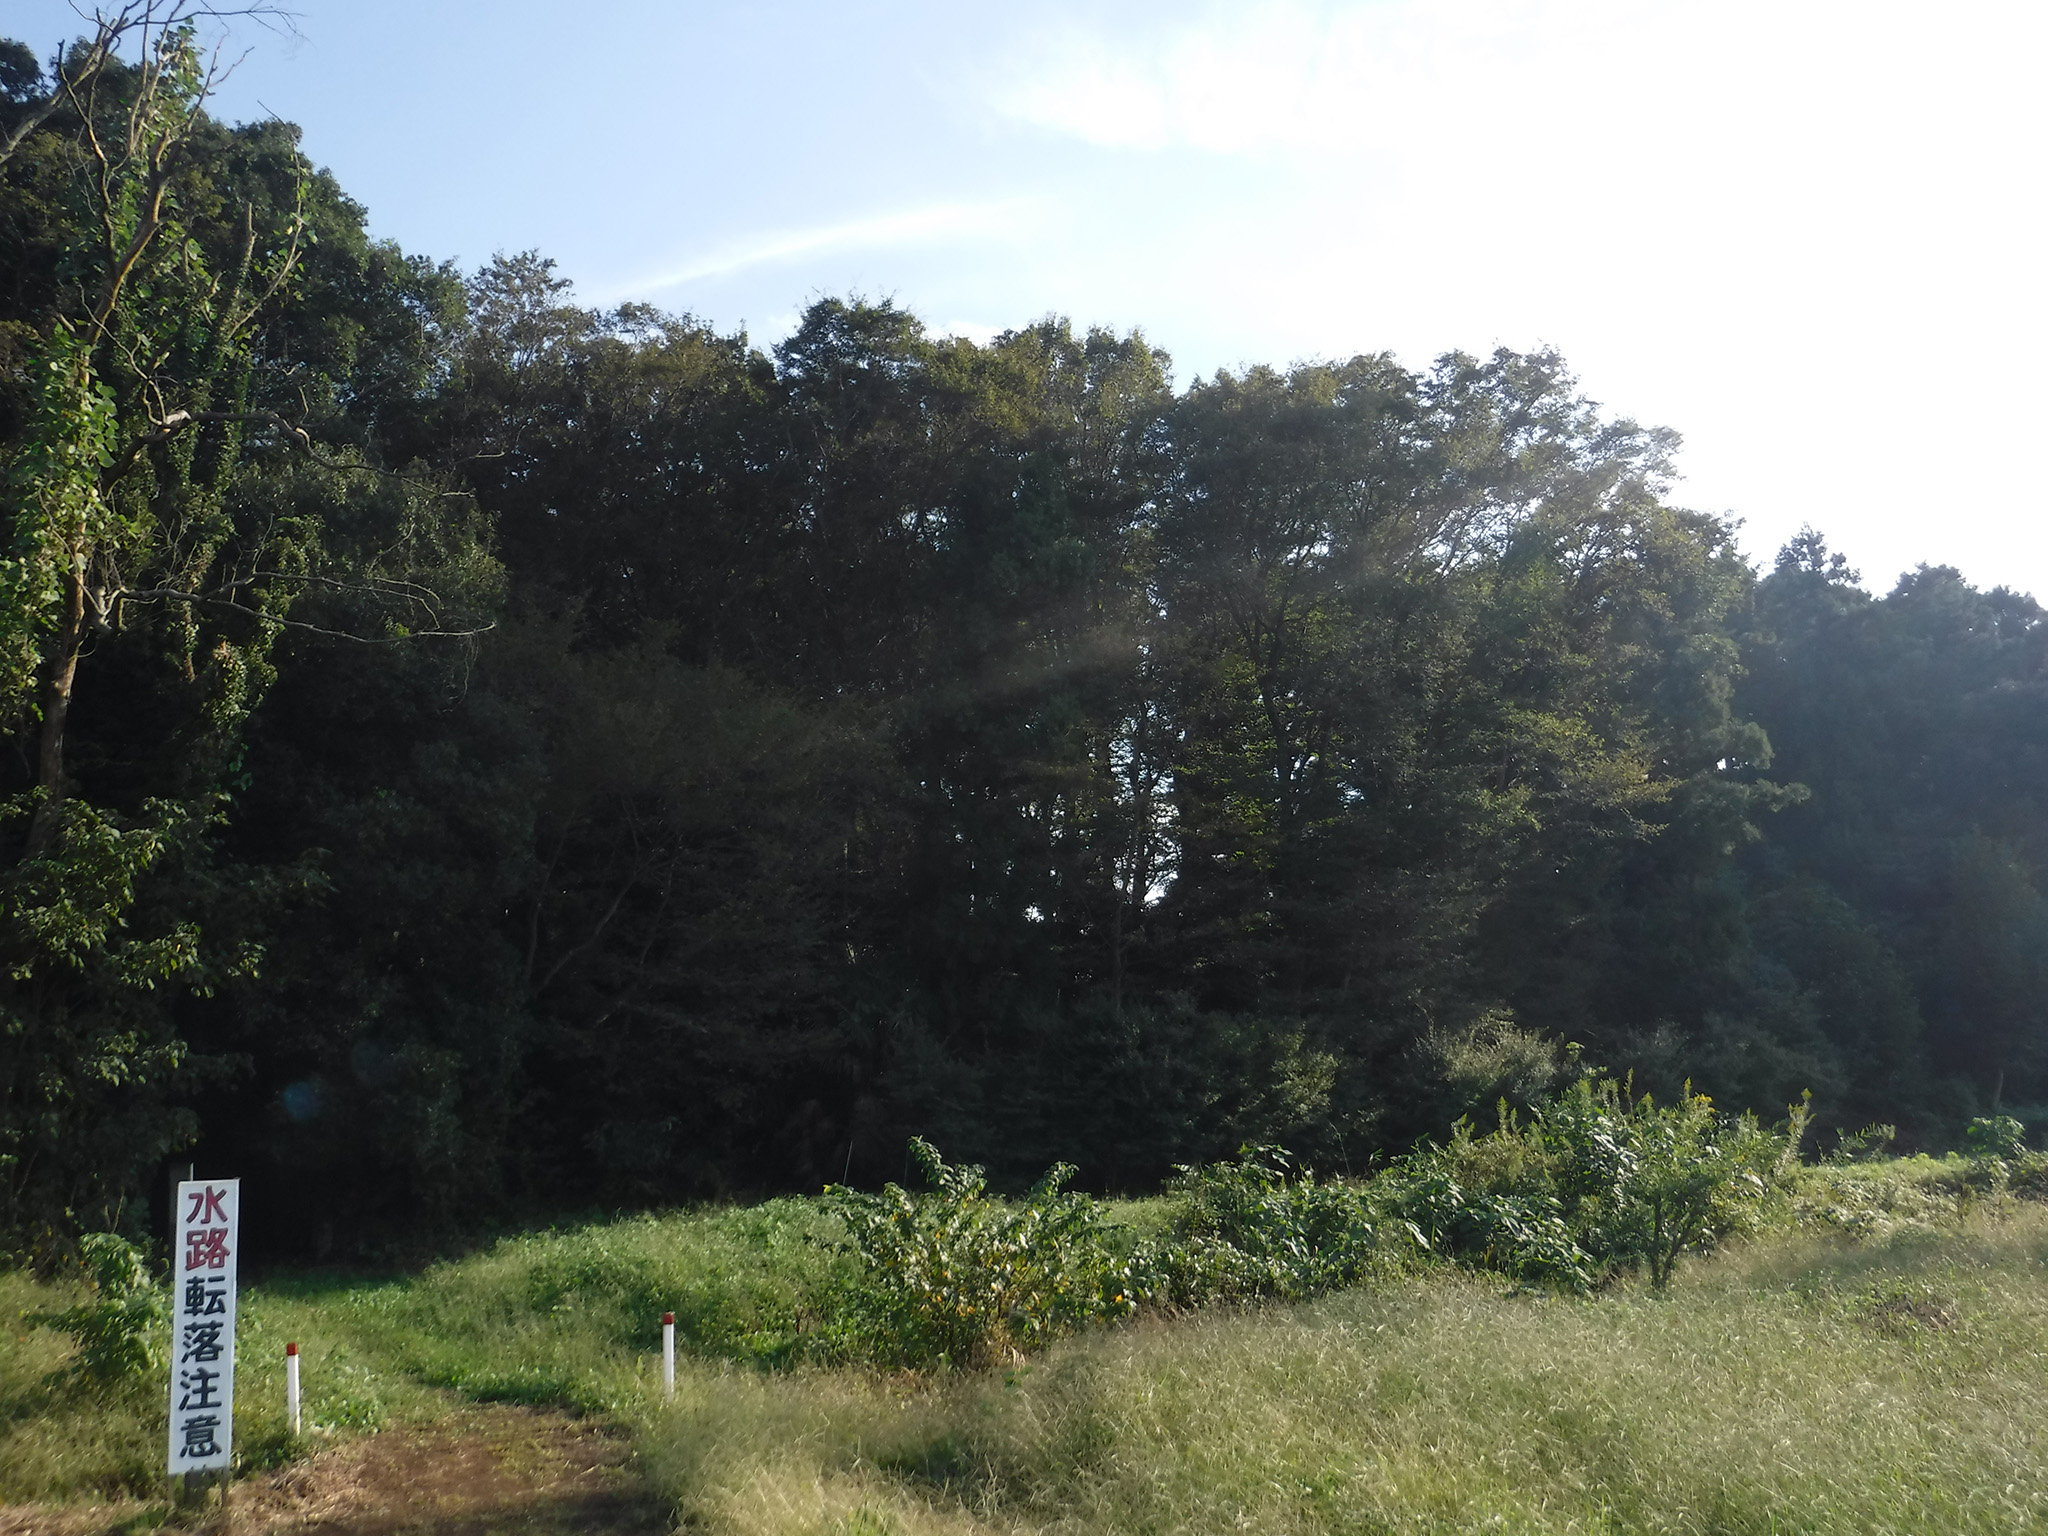 蓮田市堀の内ふるさとの緑の景観地 埼玉みどりのポータルサイト